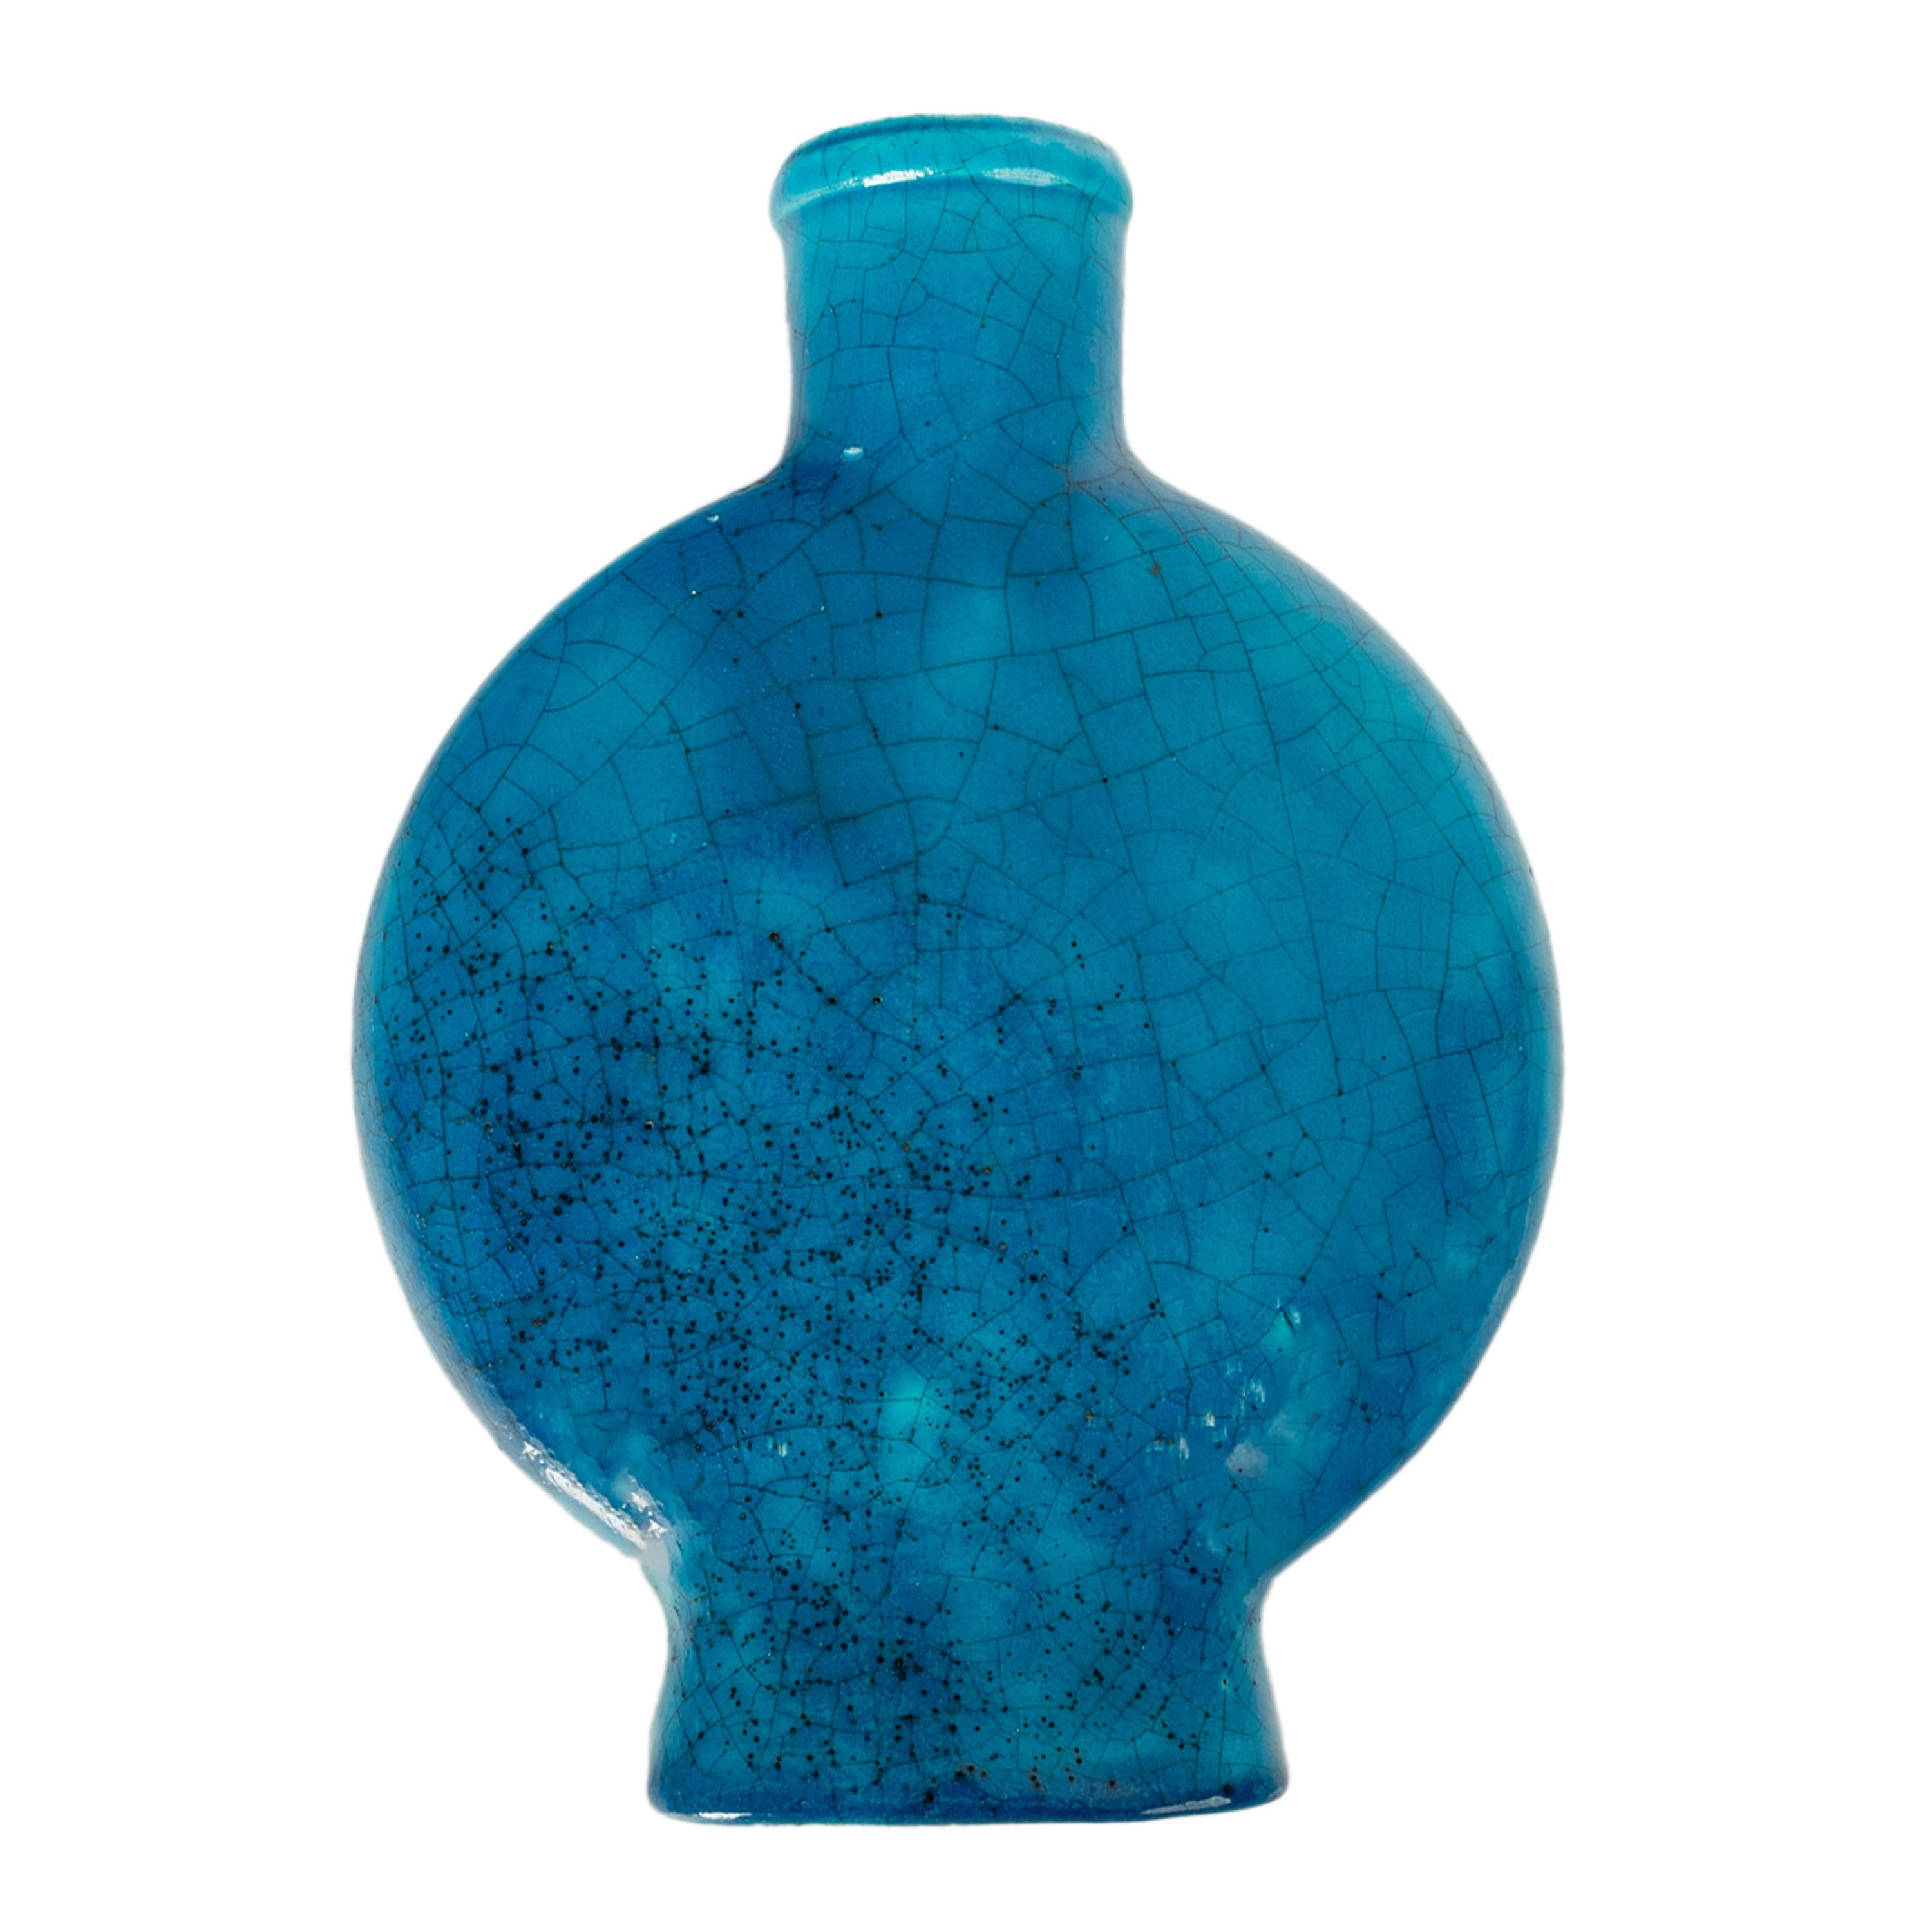 Edmond Lachenal (1855-1948), eine wunderbare türkisblaue, vulkanisch glasierte Keramikvase des Art Déco, um 1930, in herrlichem antiken Zustand. Edmond Lachenal gilt als Innovator und Schlüsselfigur des keramischen Jugendstilkreises. 1899 wurde